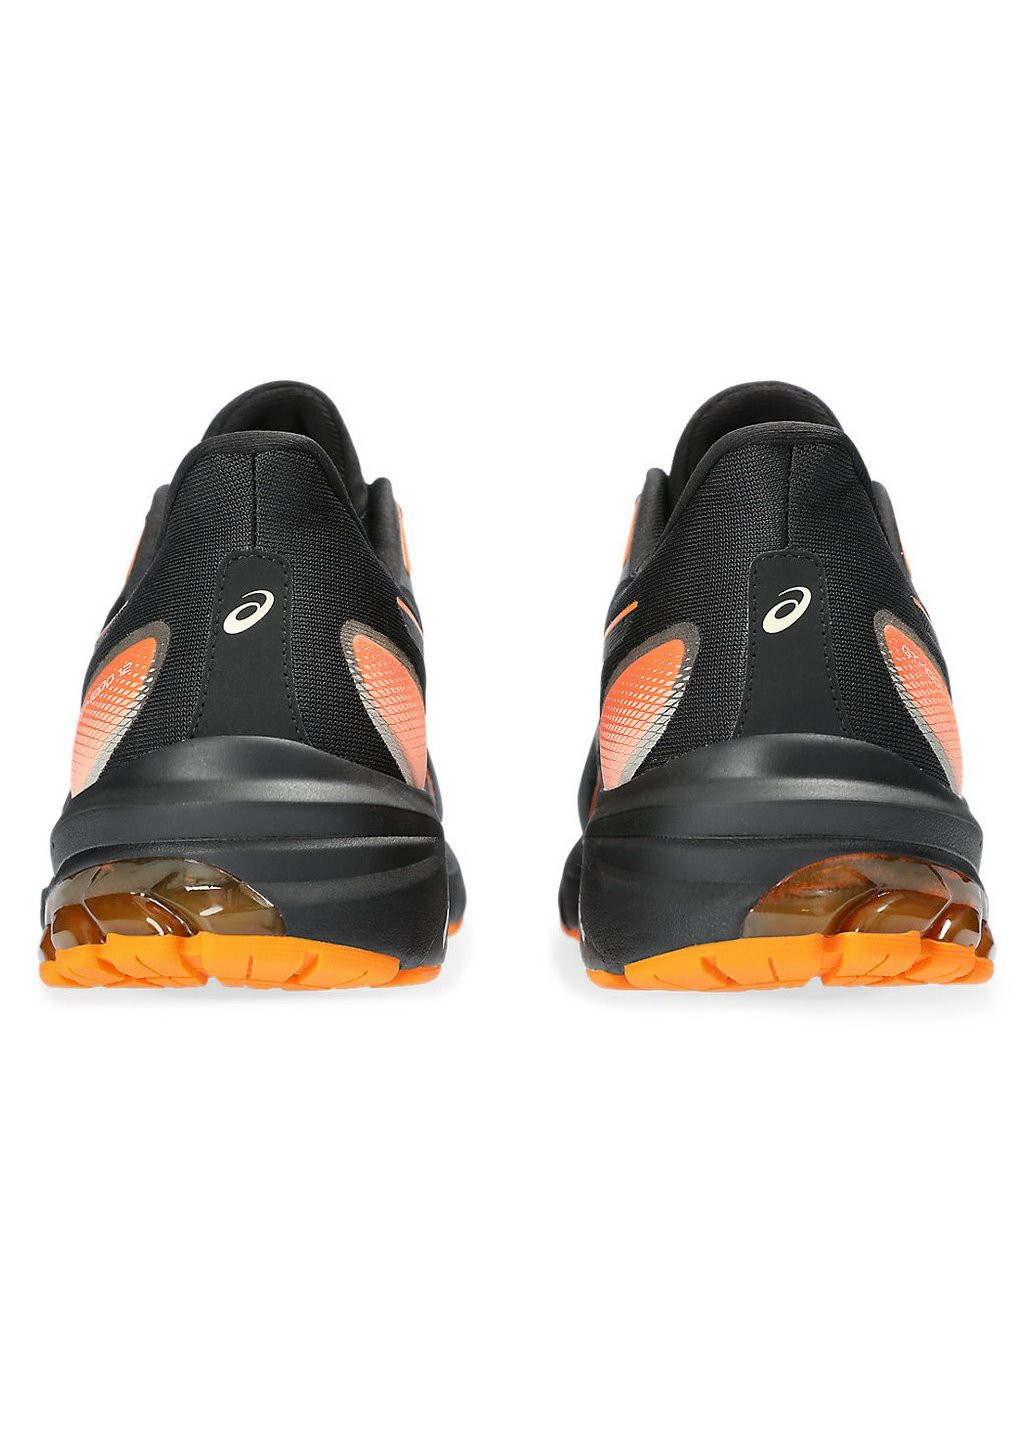 Черные демисезонные мужские беговые кроссовки gt-1000 12 gtx 1011b684-001 Asics